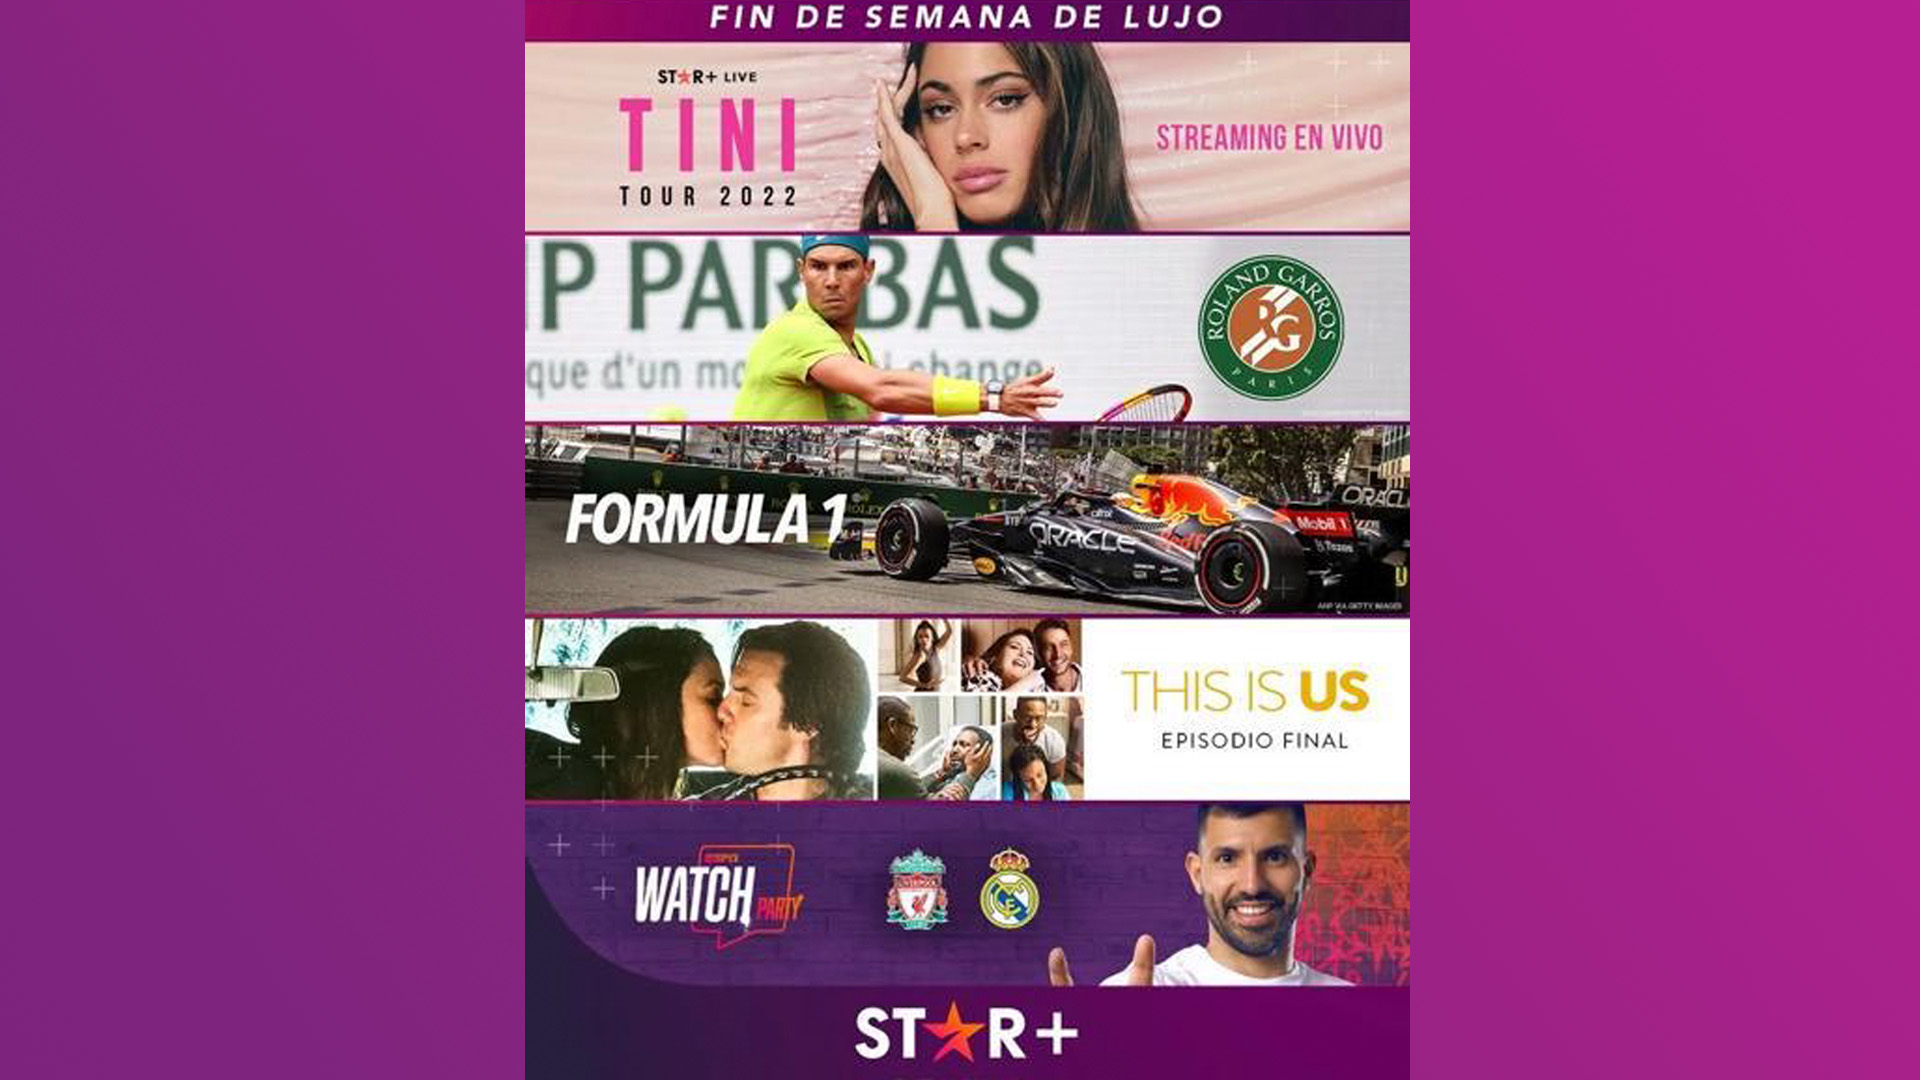 Roland Garros, Champion League, F1 en Mónaco y el show de Tini, lo imperdible de este fin de semana en Star+